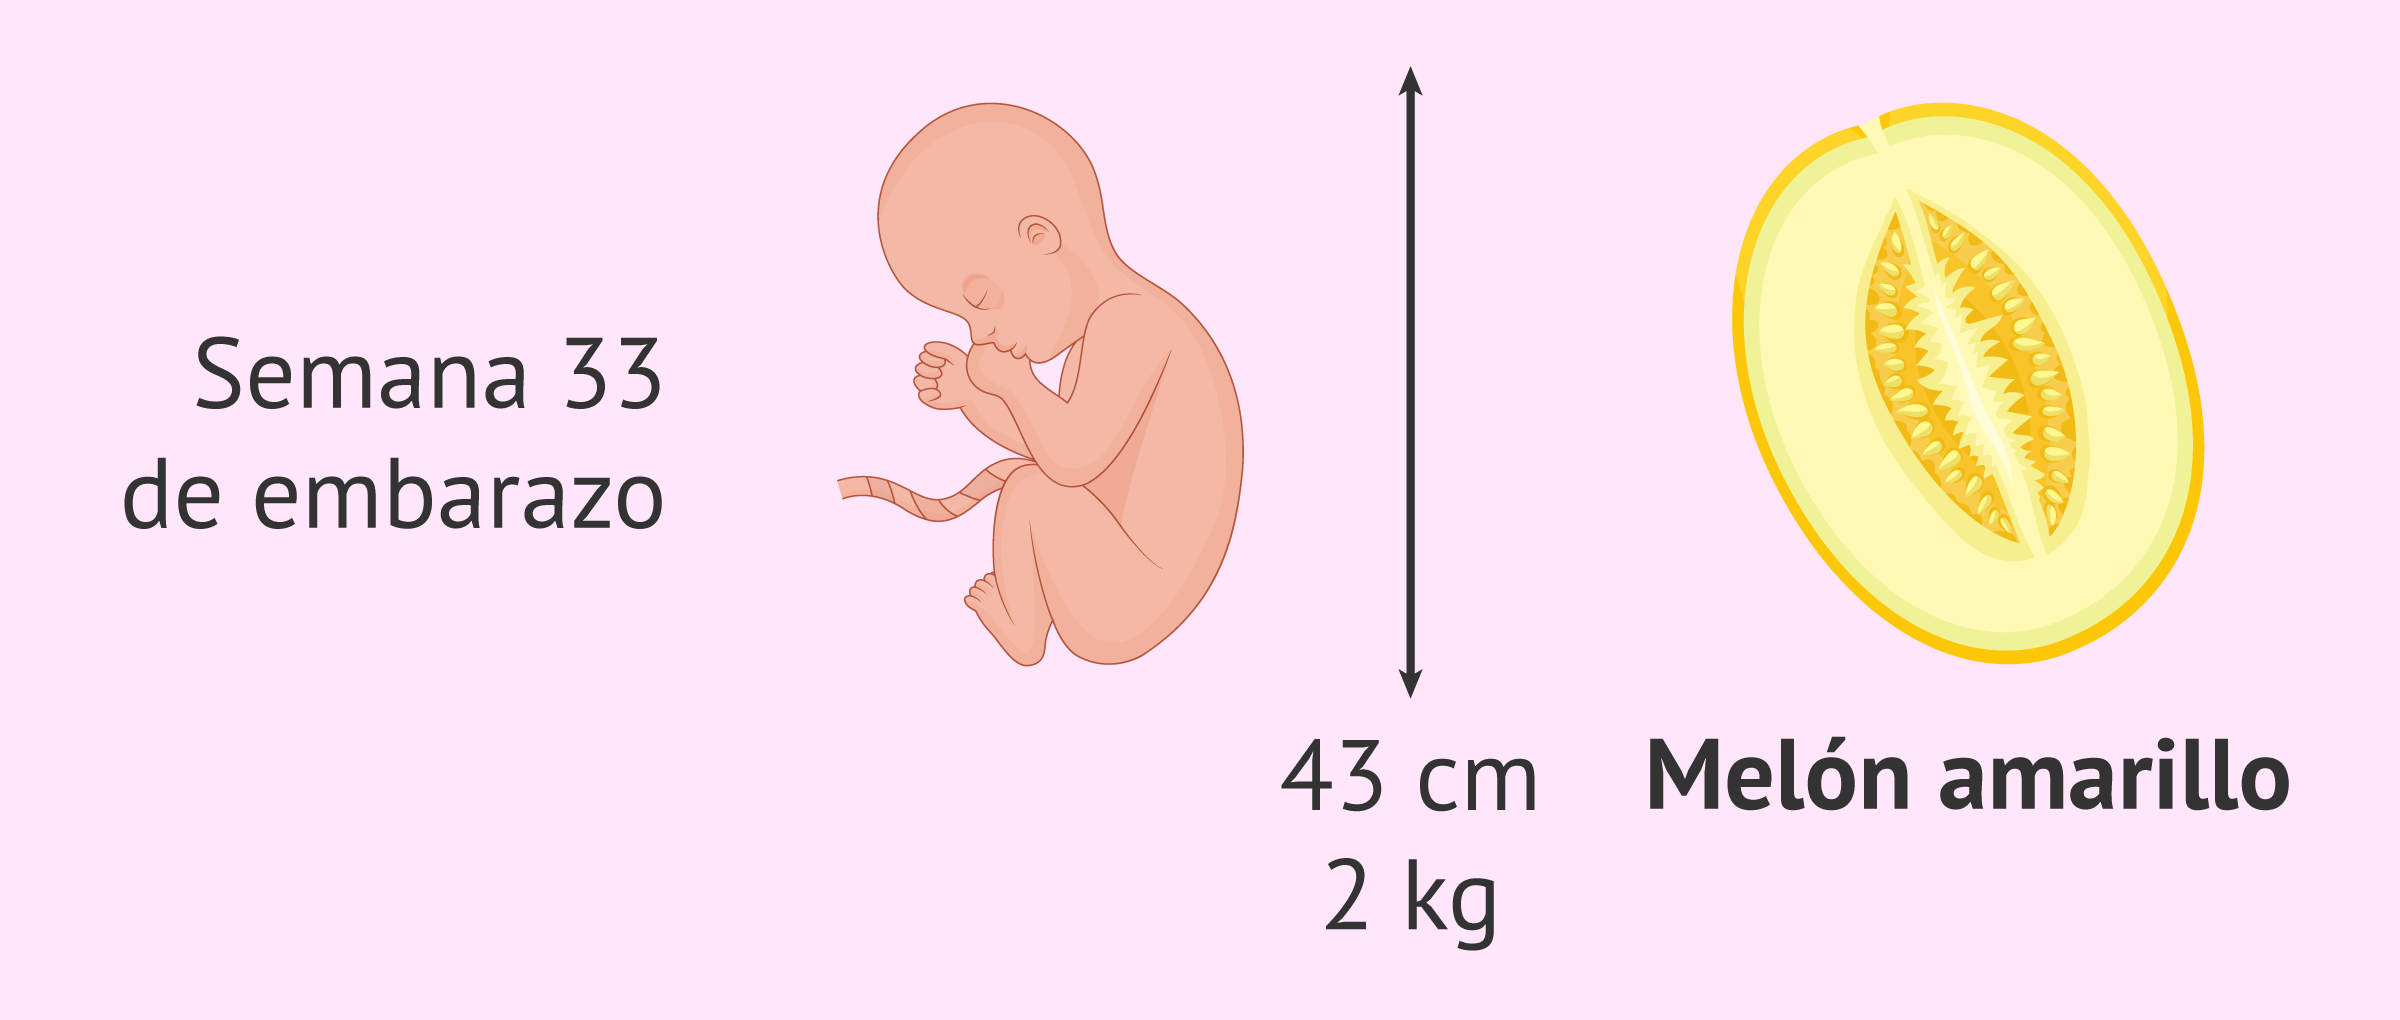 Tamaño y peso del bebé a las 33 semanas de embarazo